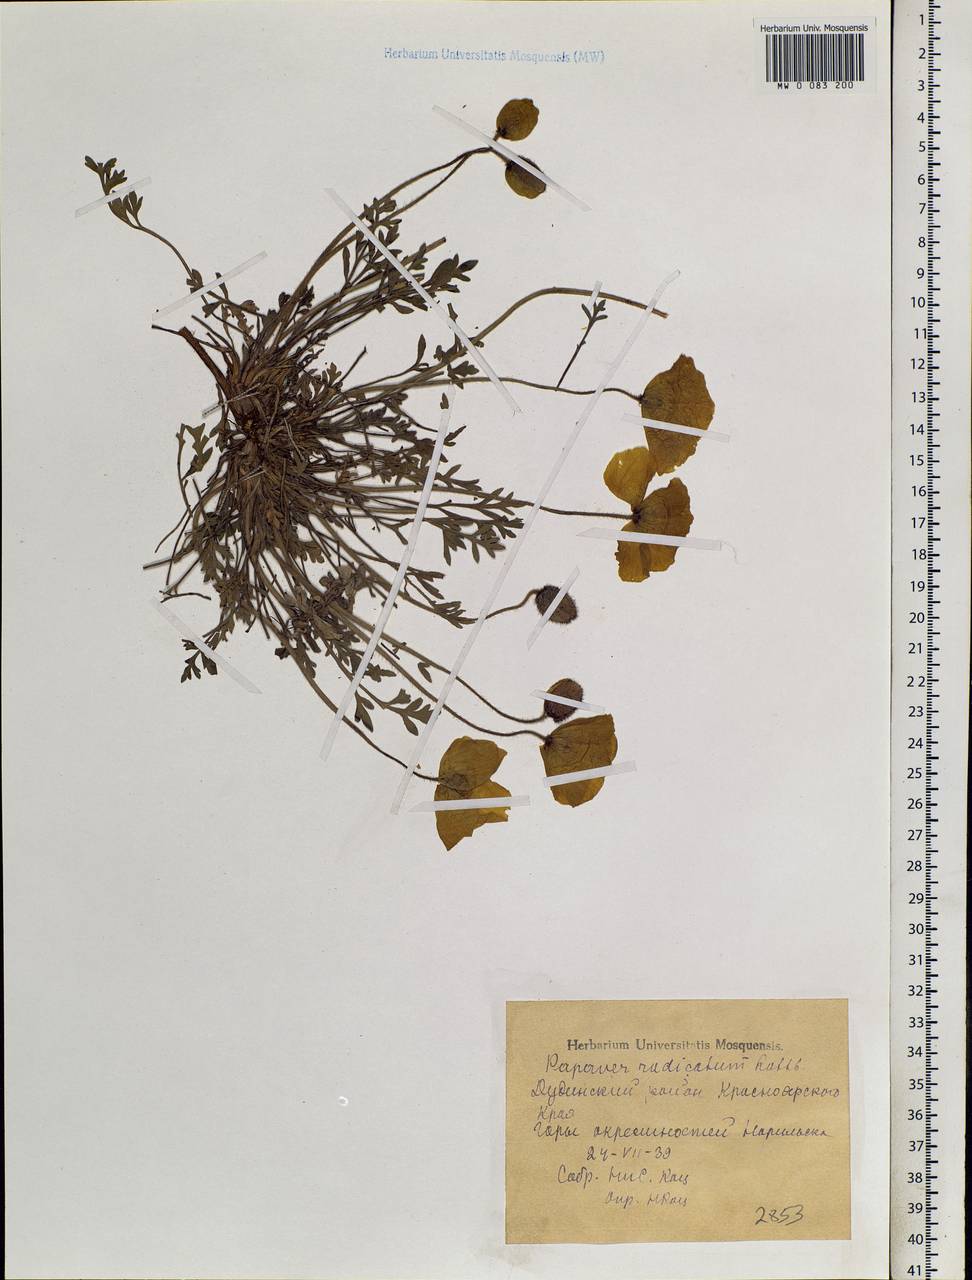 Oreomecon radicatum subsp. radicatum, Siberia, Central Siberia (S3) (Russia)